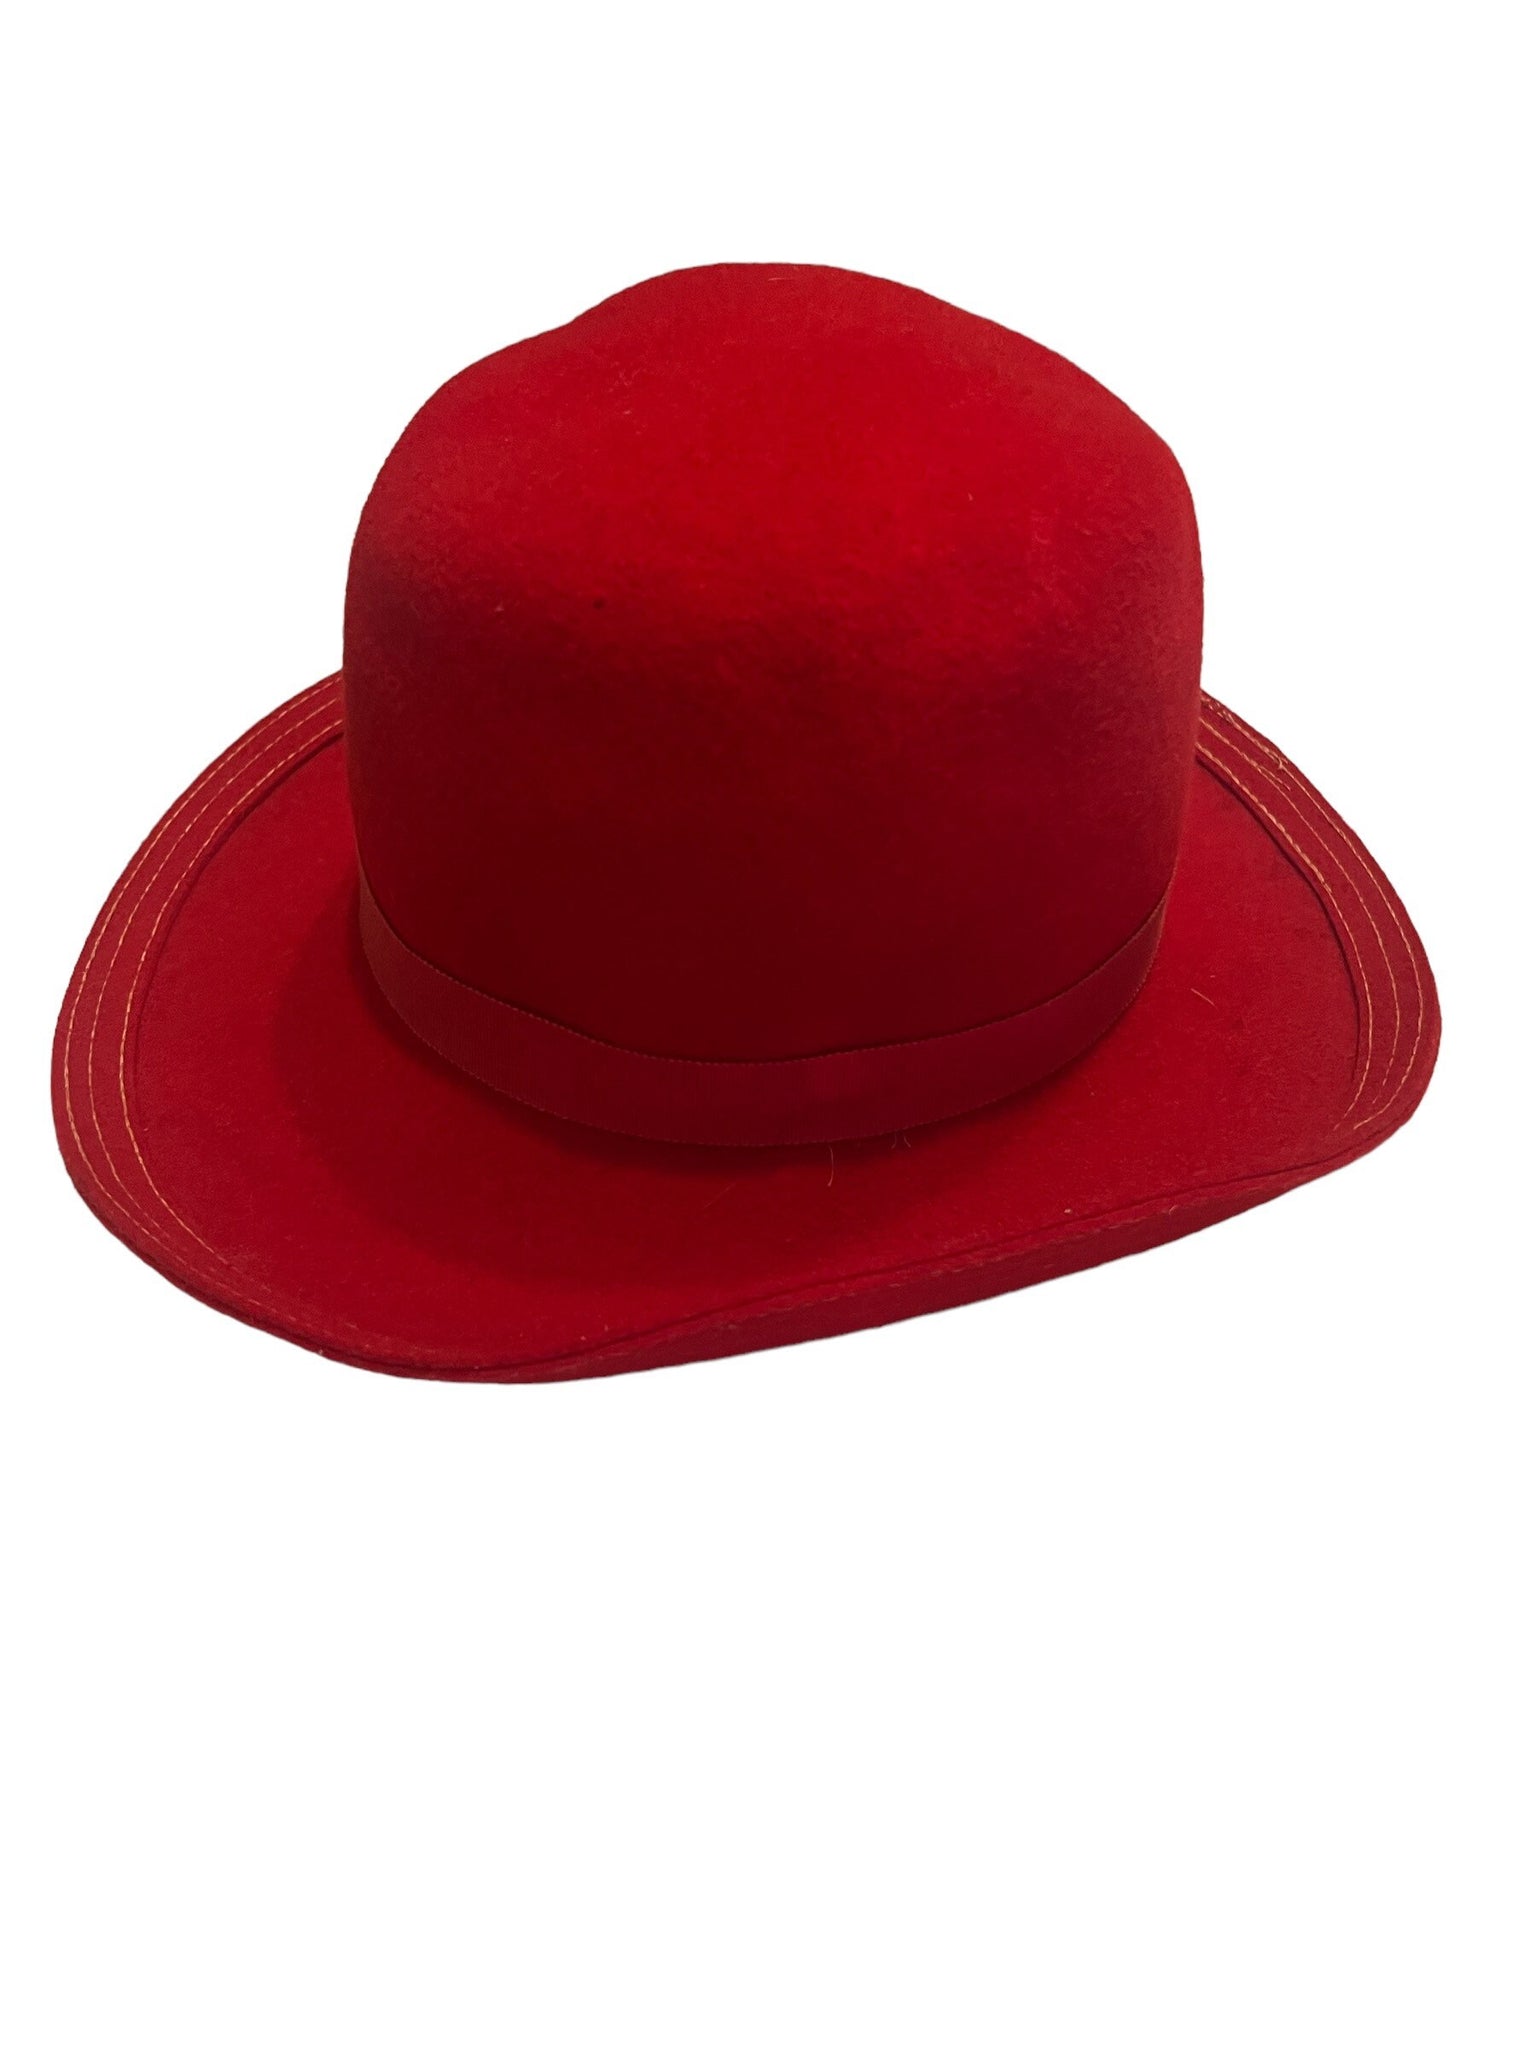 Vintage red wool hat